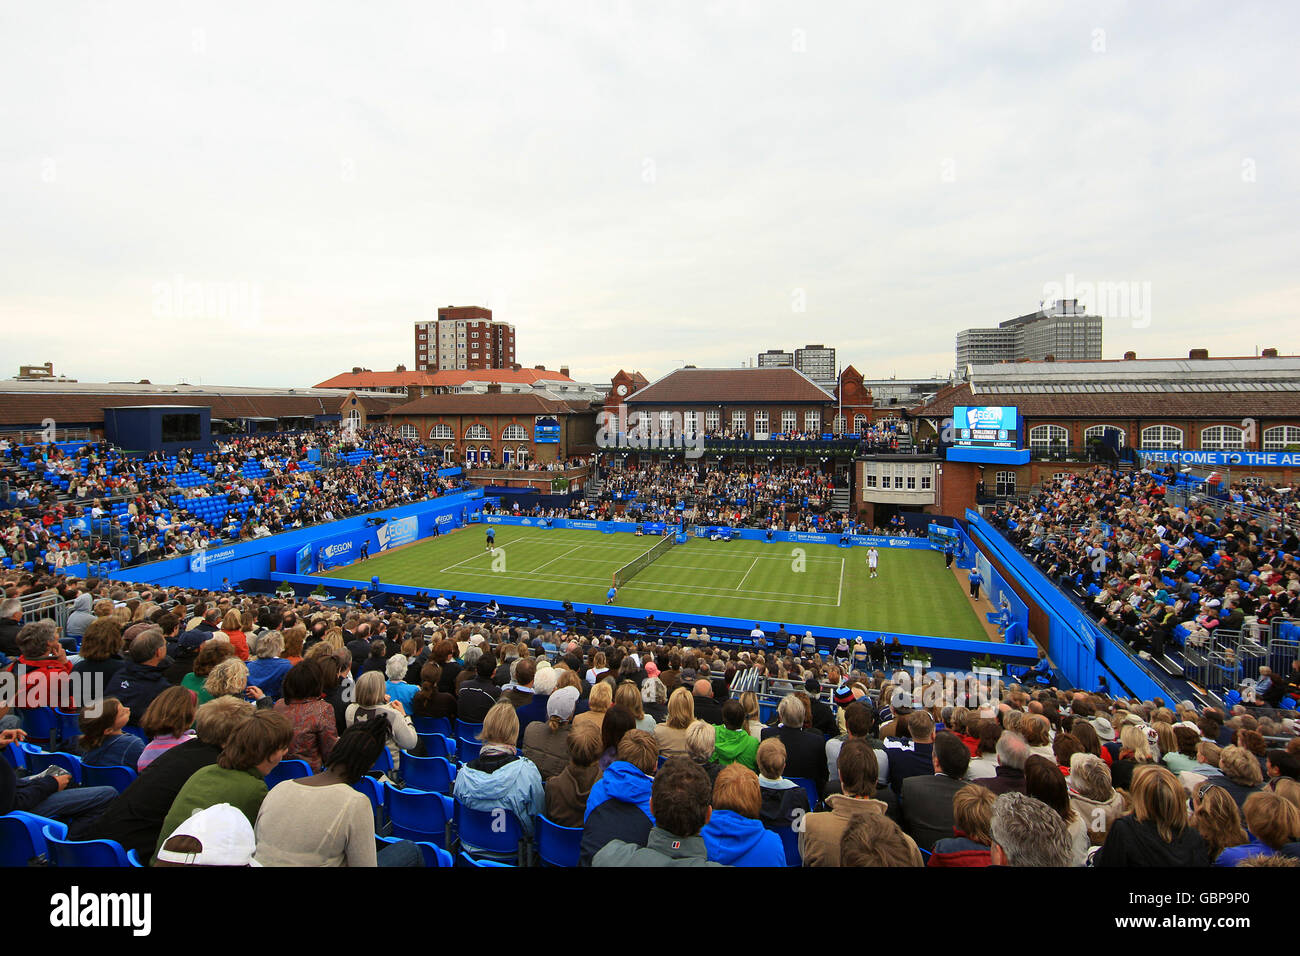 Tennis - Championnats AEGON - deuxième jour - le Queen's Club.Vue générale du centre court au Queen's Club, Kensington. Banque D'Images